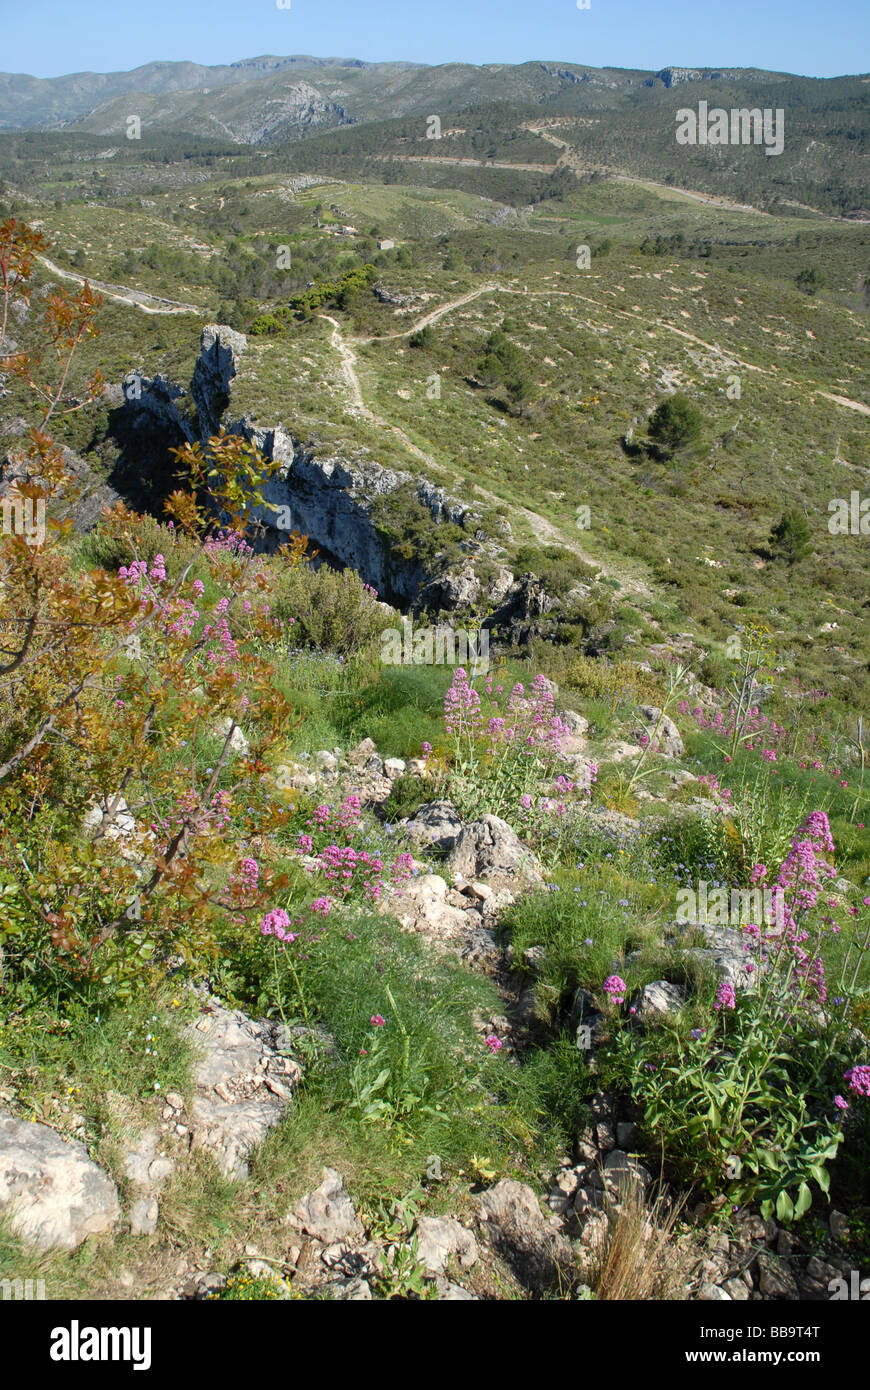 Sierra de La Forada, near Alcala de la Jovada, Alicante Province, Comunidad Valenciana, Spain Stock Photo